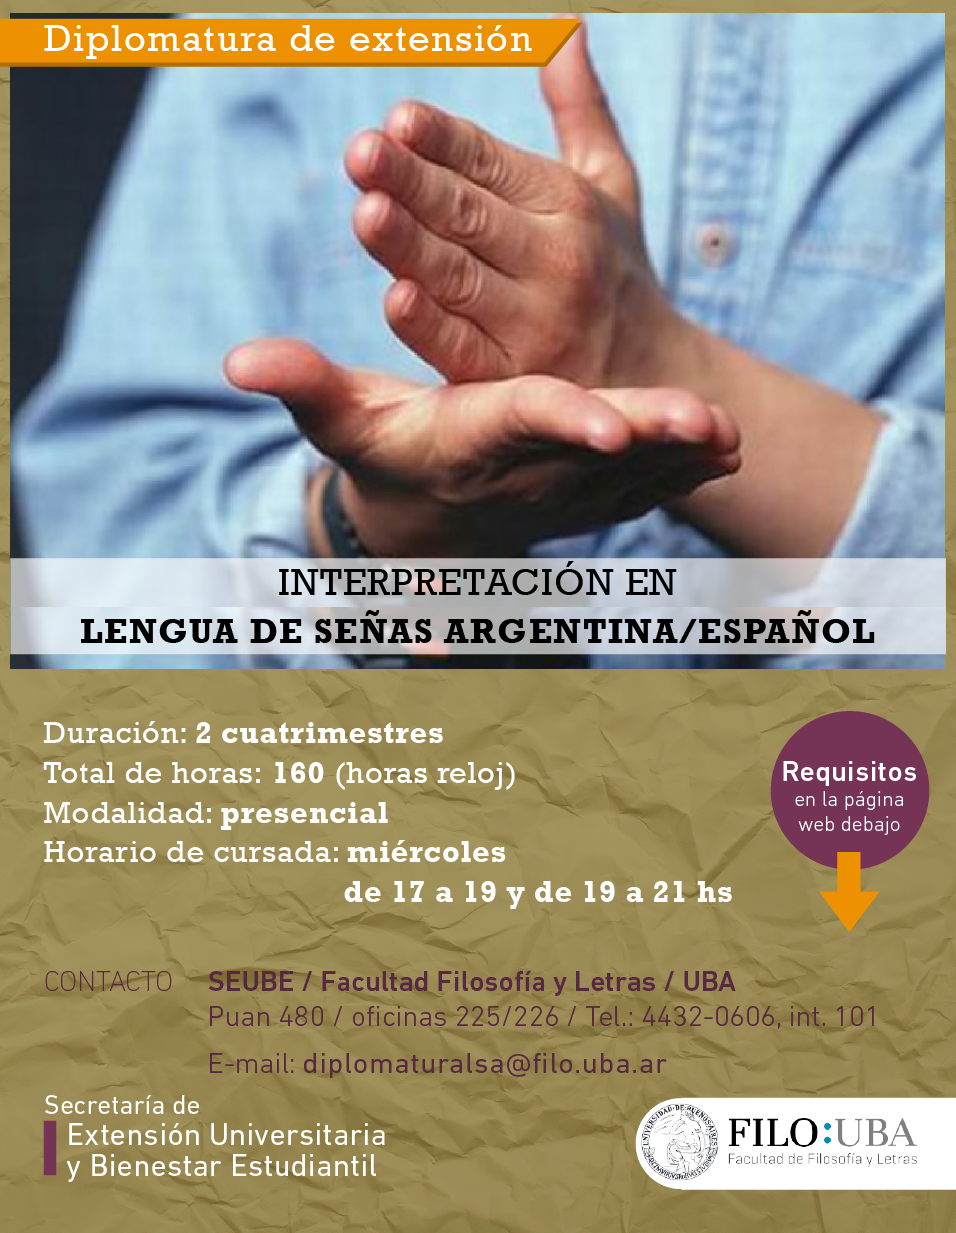 La imagen muestra el flyer de la Diplomatura en Lengua de Señas Argentina. La información descripta en el flyer es la misma que se desarrolla en el cuerpo de la noticia. 